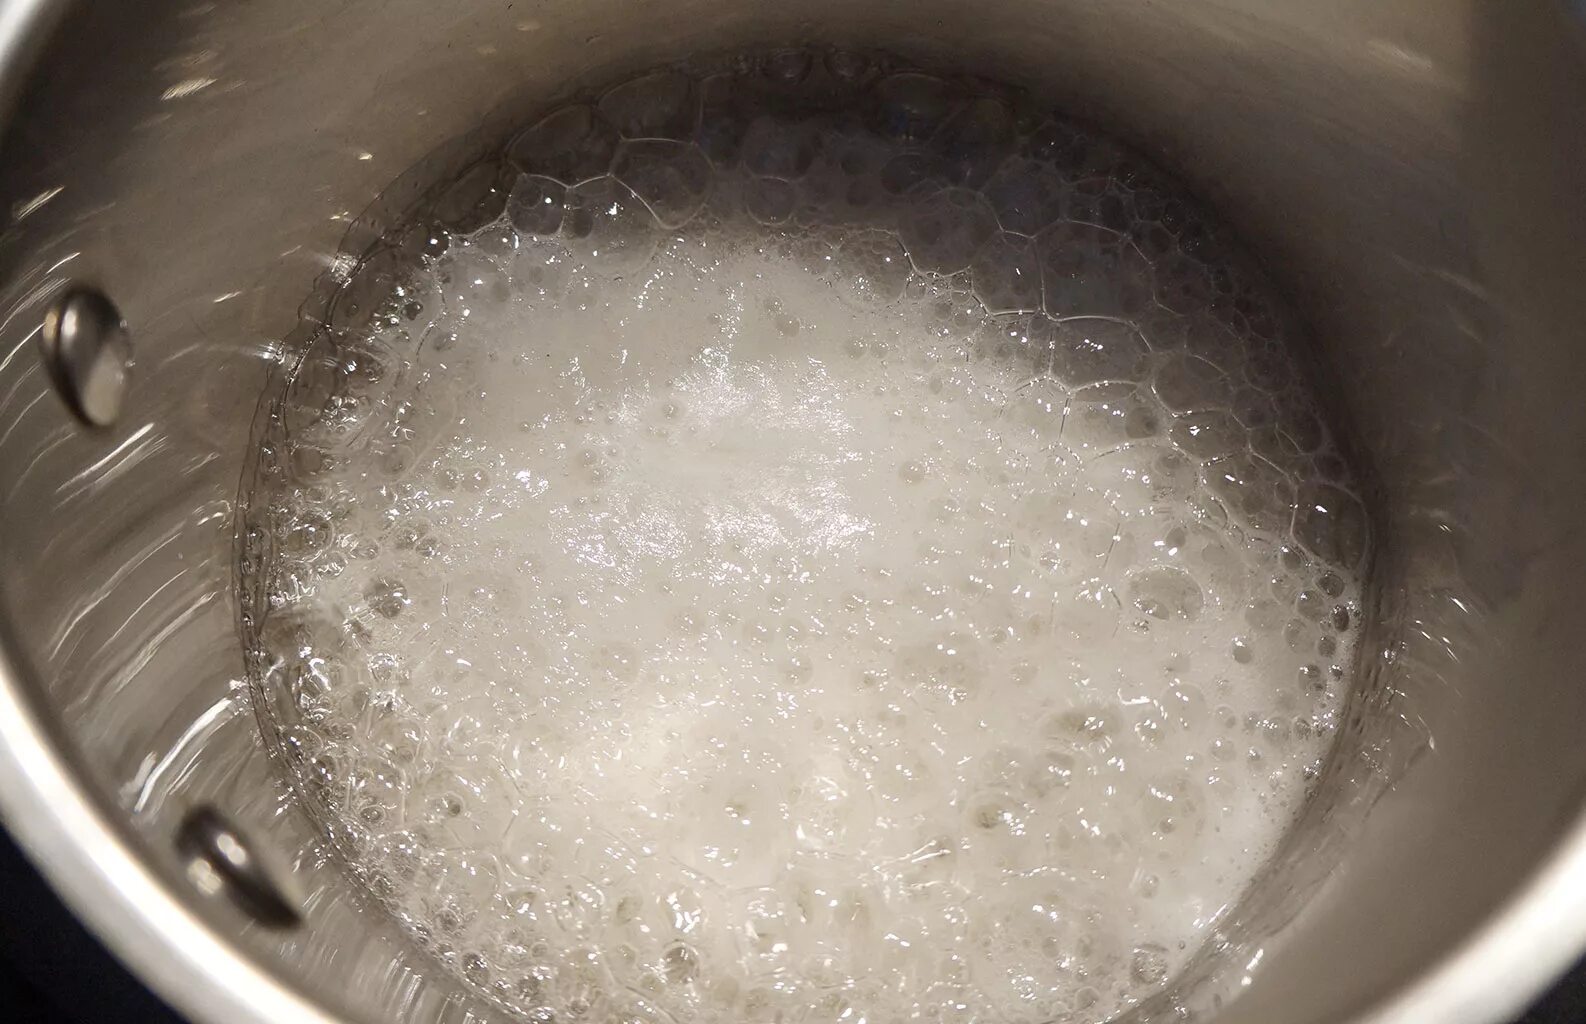 Сахарная вода. Сахар в кастрюле. Сахар в воде. Украшения из глюкозного сиропа. Название сахара в воде